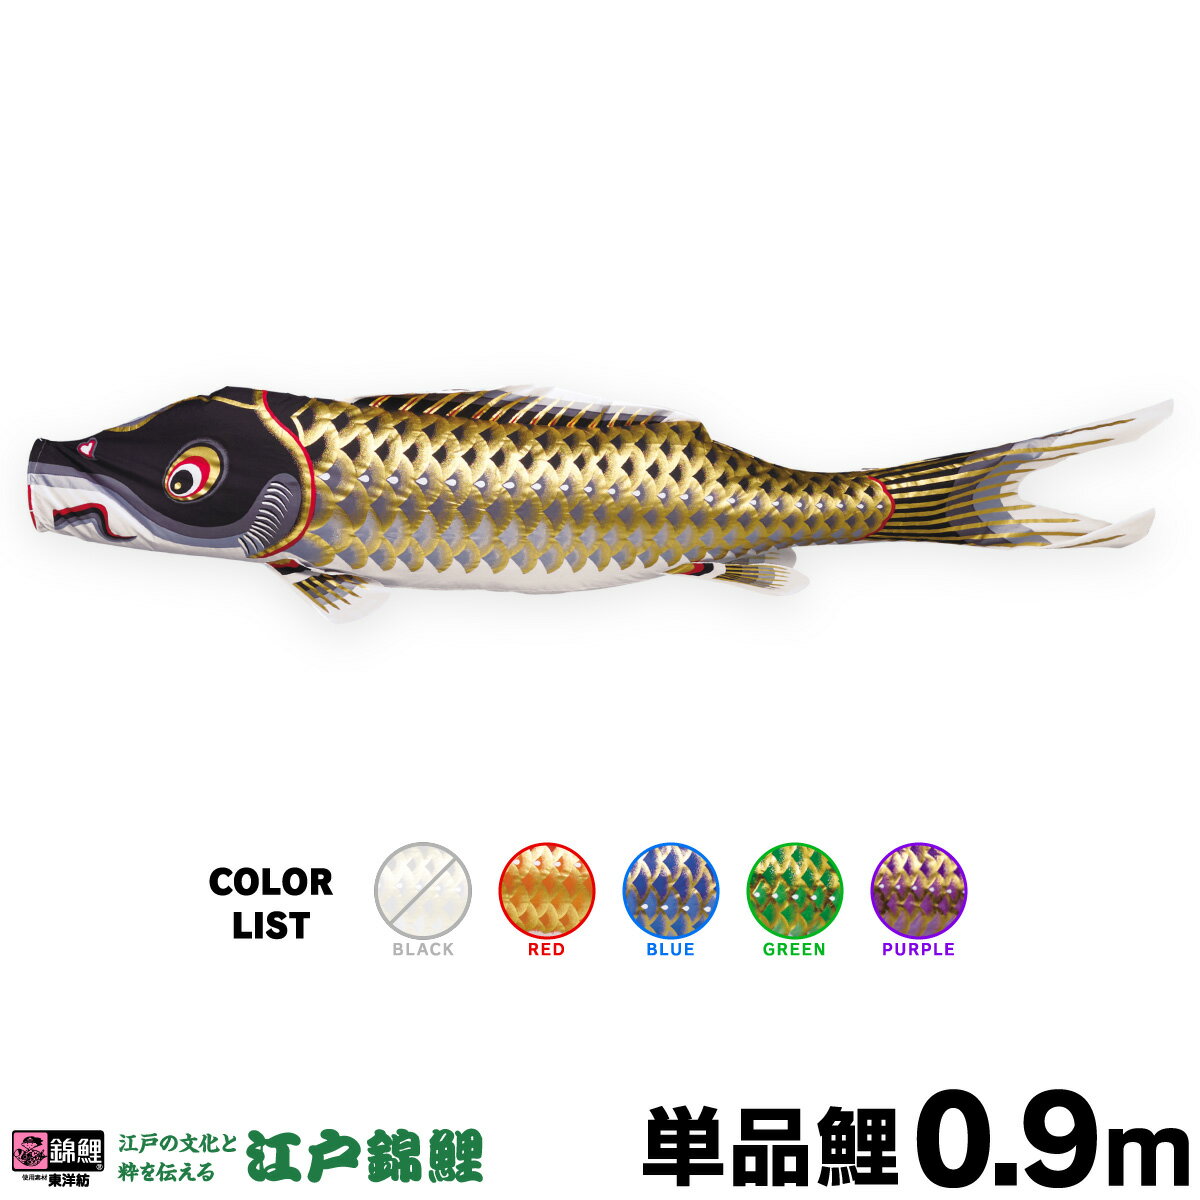 鯉のぼり 大型 金太郎ゴールド鯉セット 9m 6点セット 徳永こいのぼり